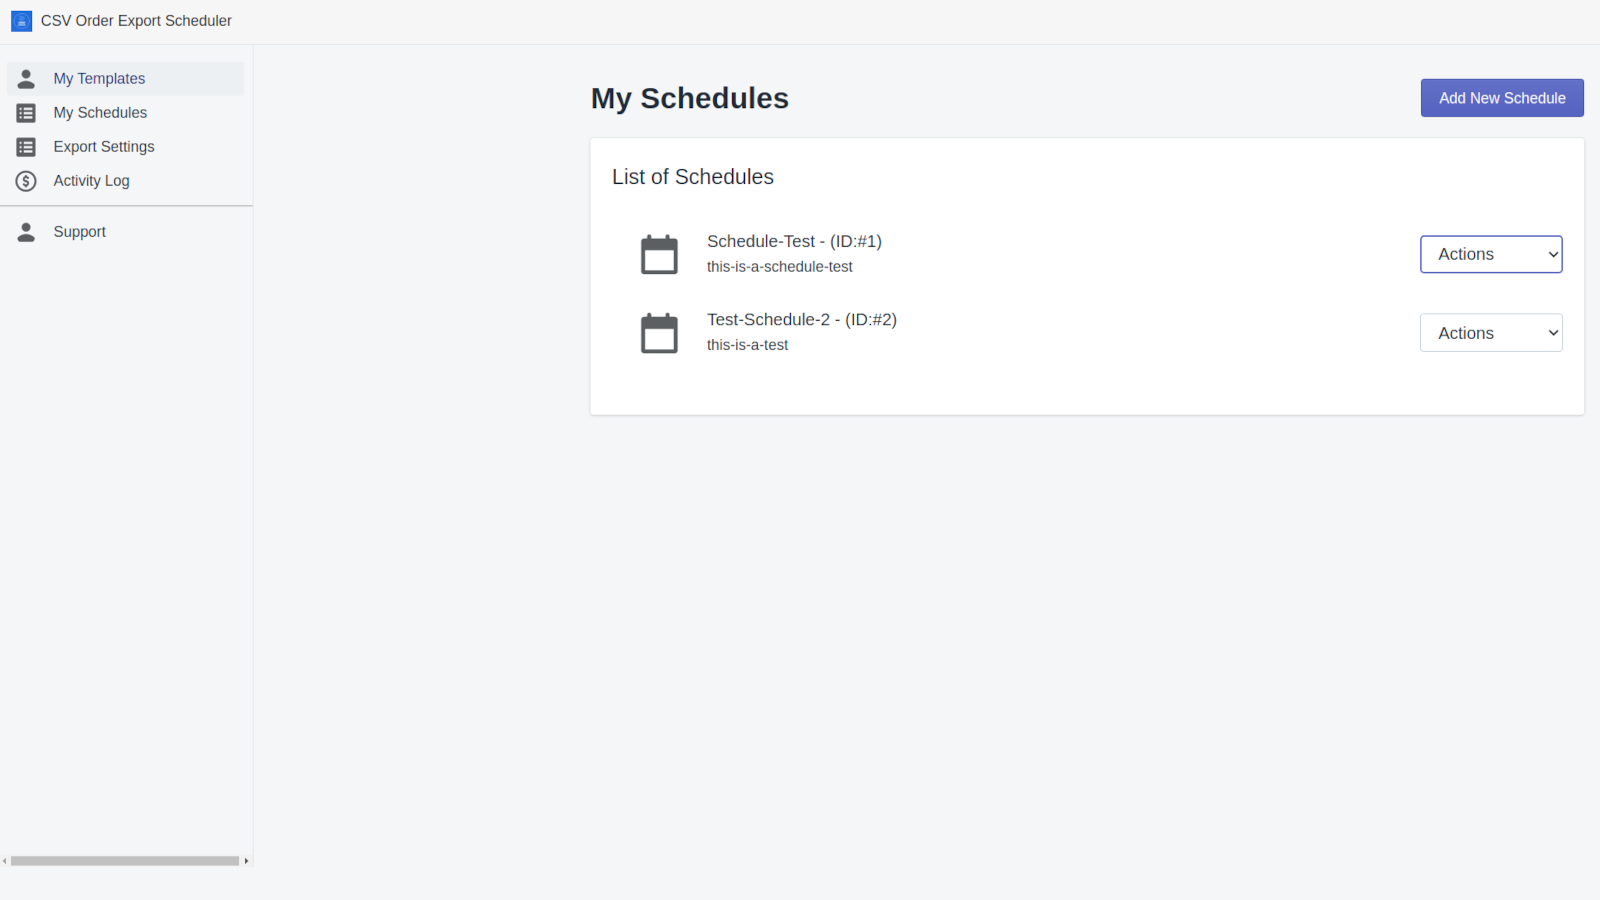 My schedules